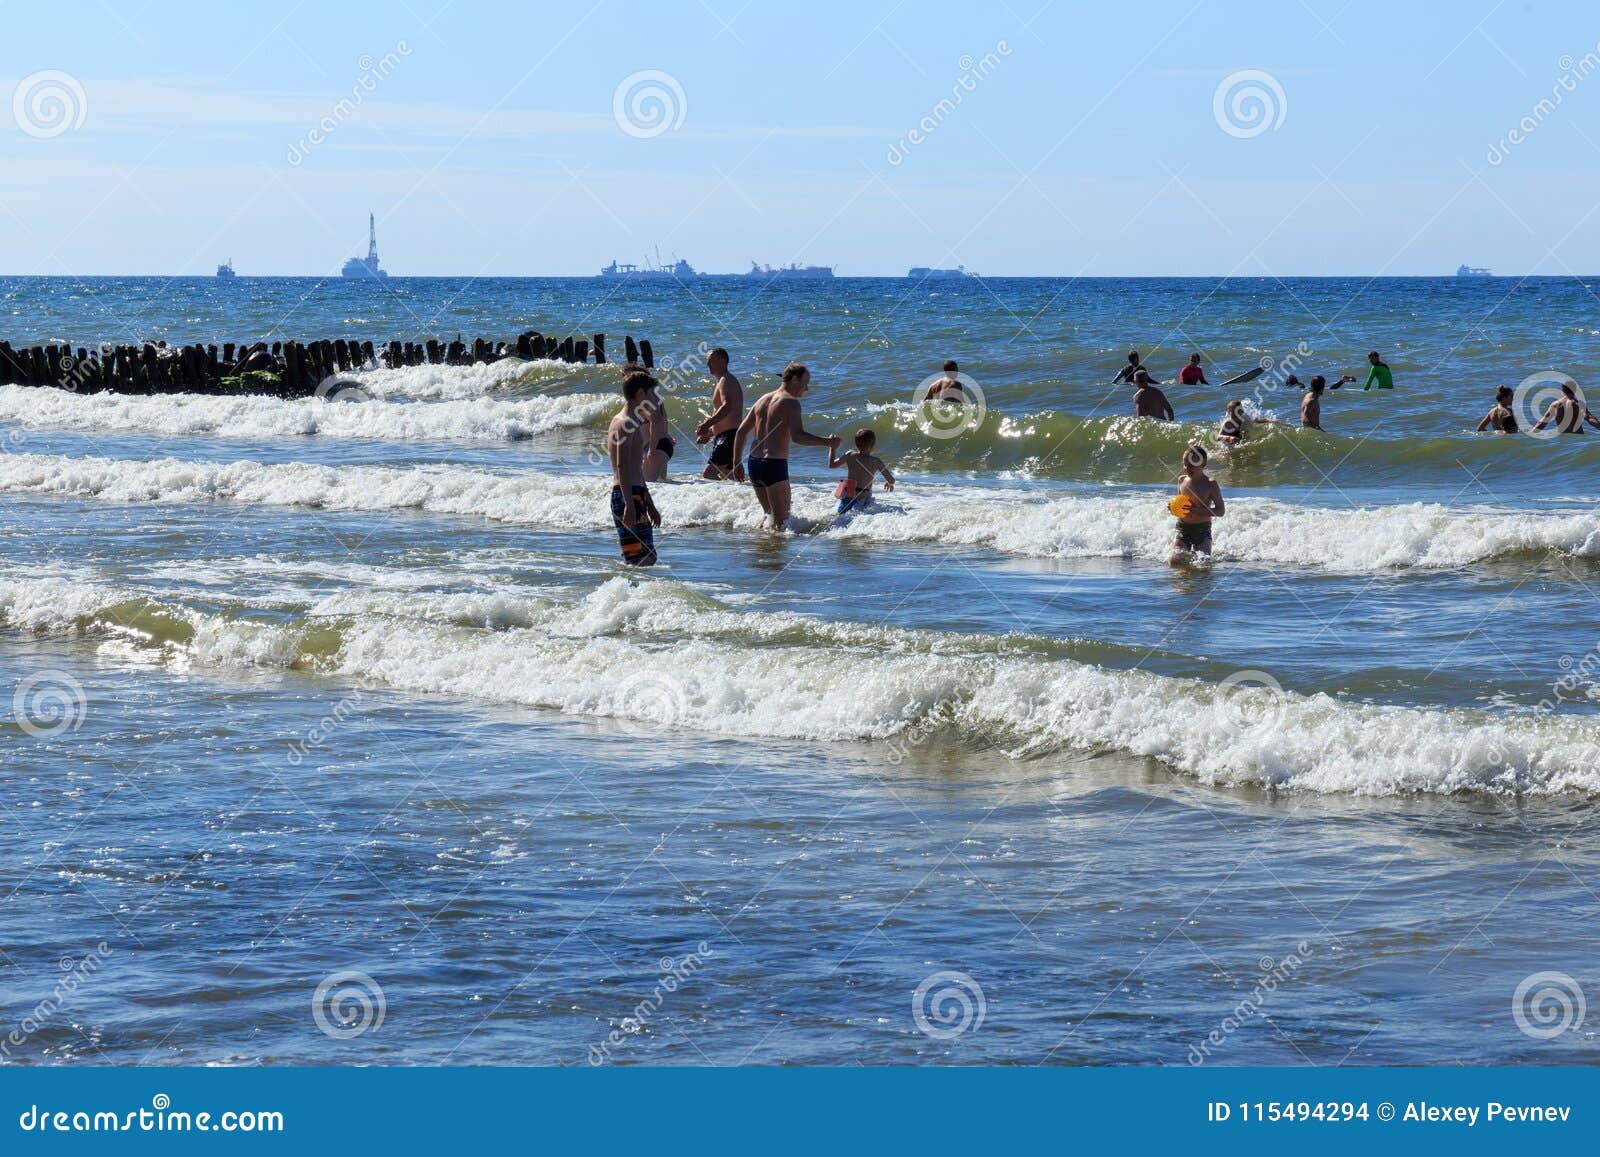 Зеленоградск купаться. Станция в море в Зеленоградске. Люди купаются в Балтийском море. Зеленоградск в море сооружение. Вода в Балтийском море Зеленоградск.